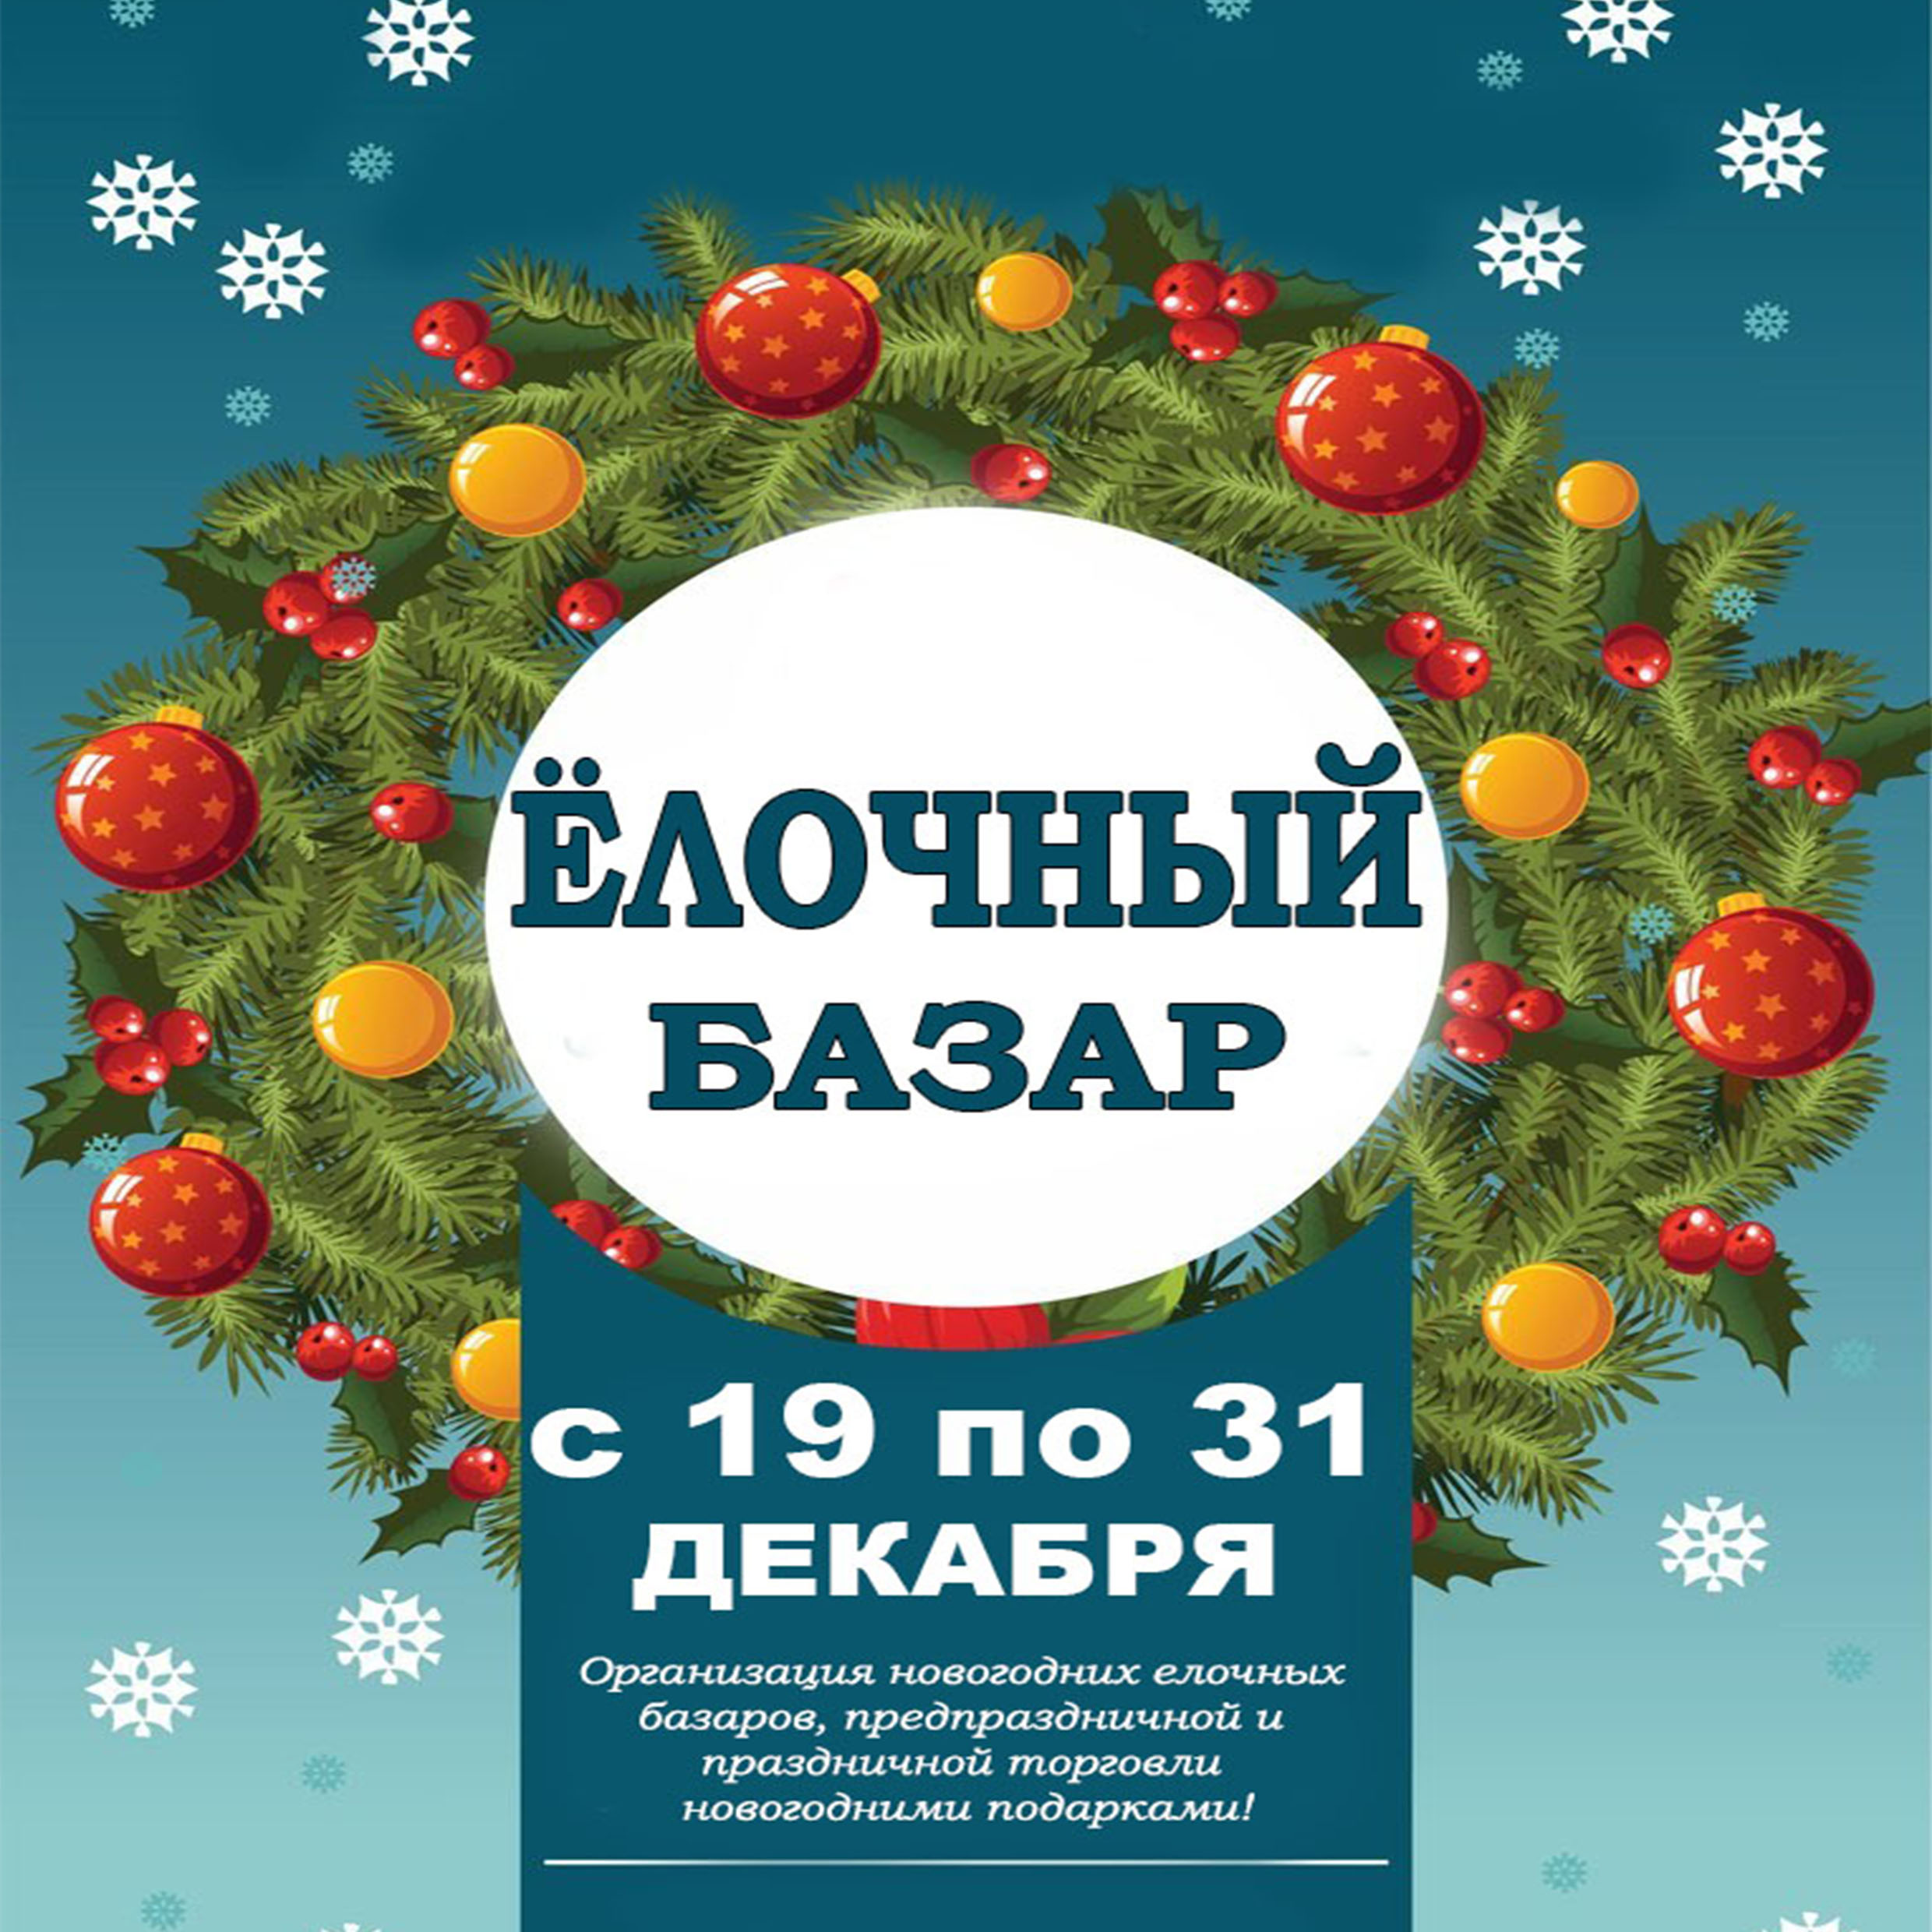 Организация новогодних елочных базаров, предпраздничной и праздничной торговли новогодними подарками!